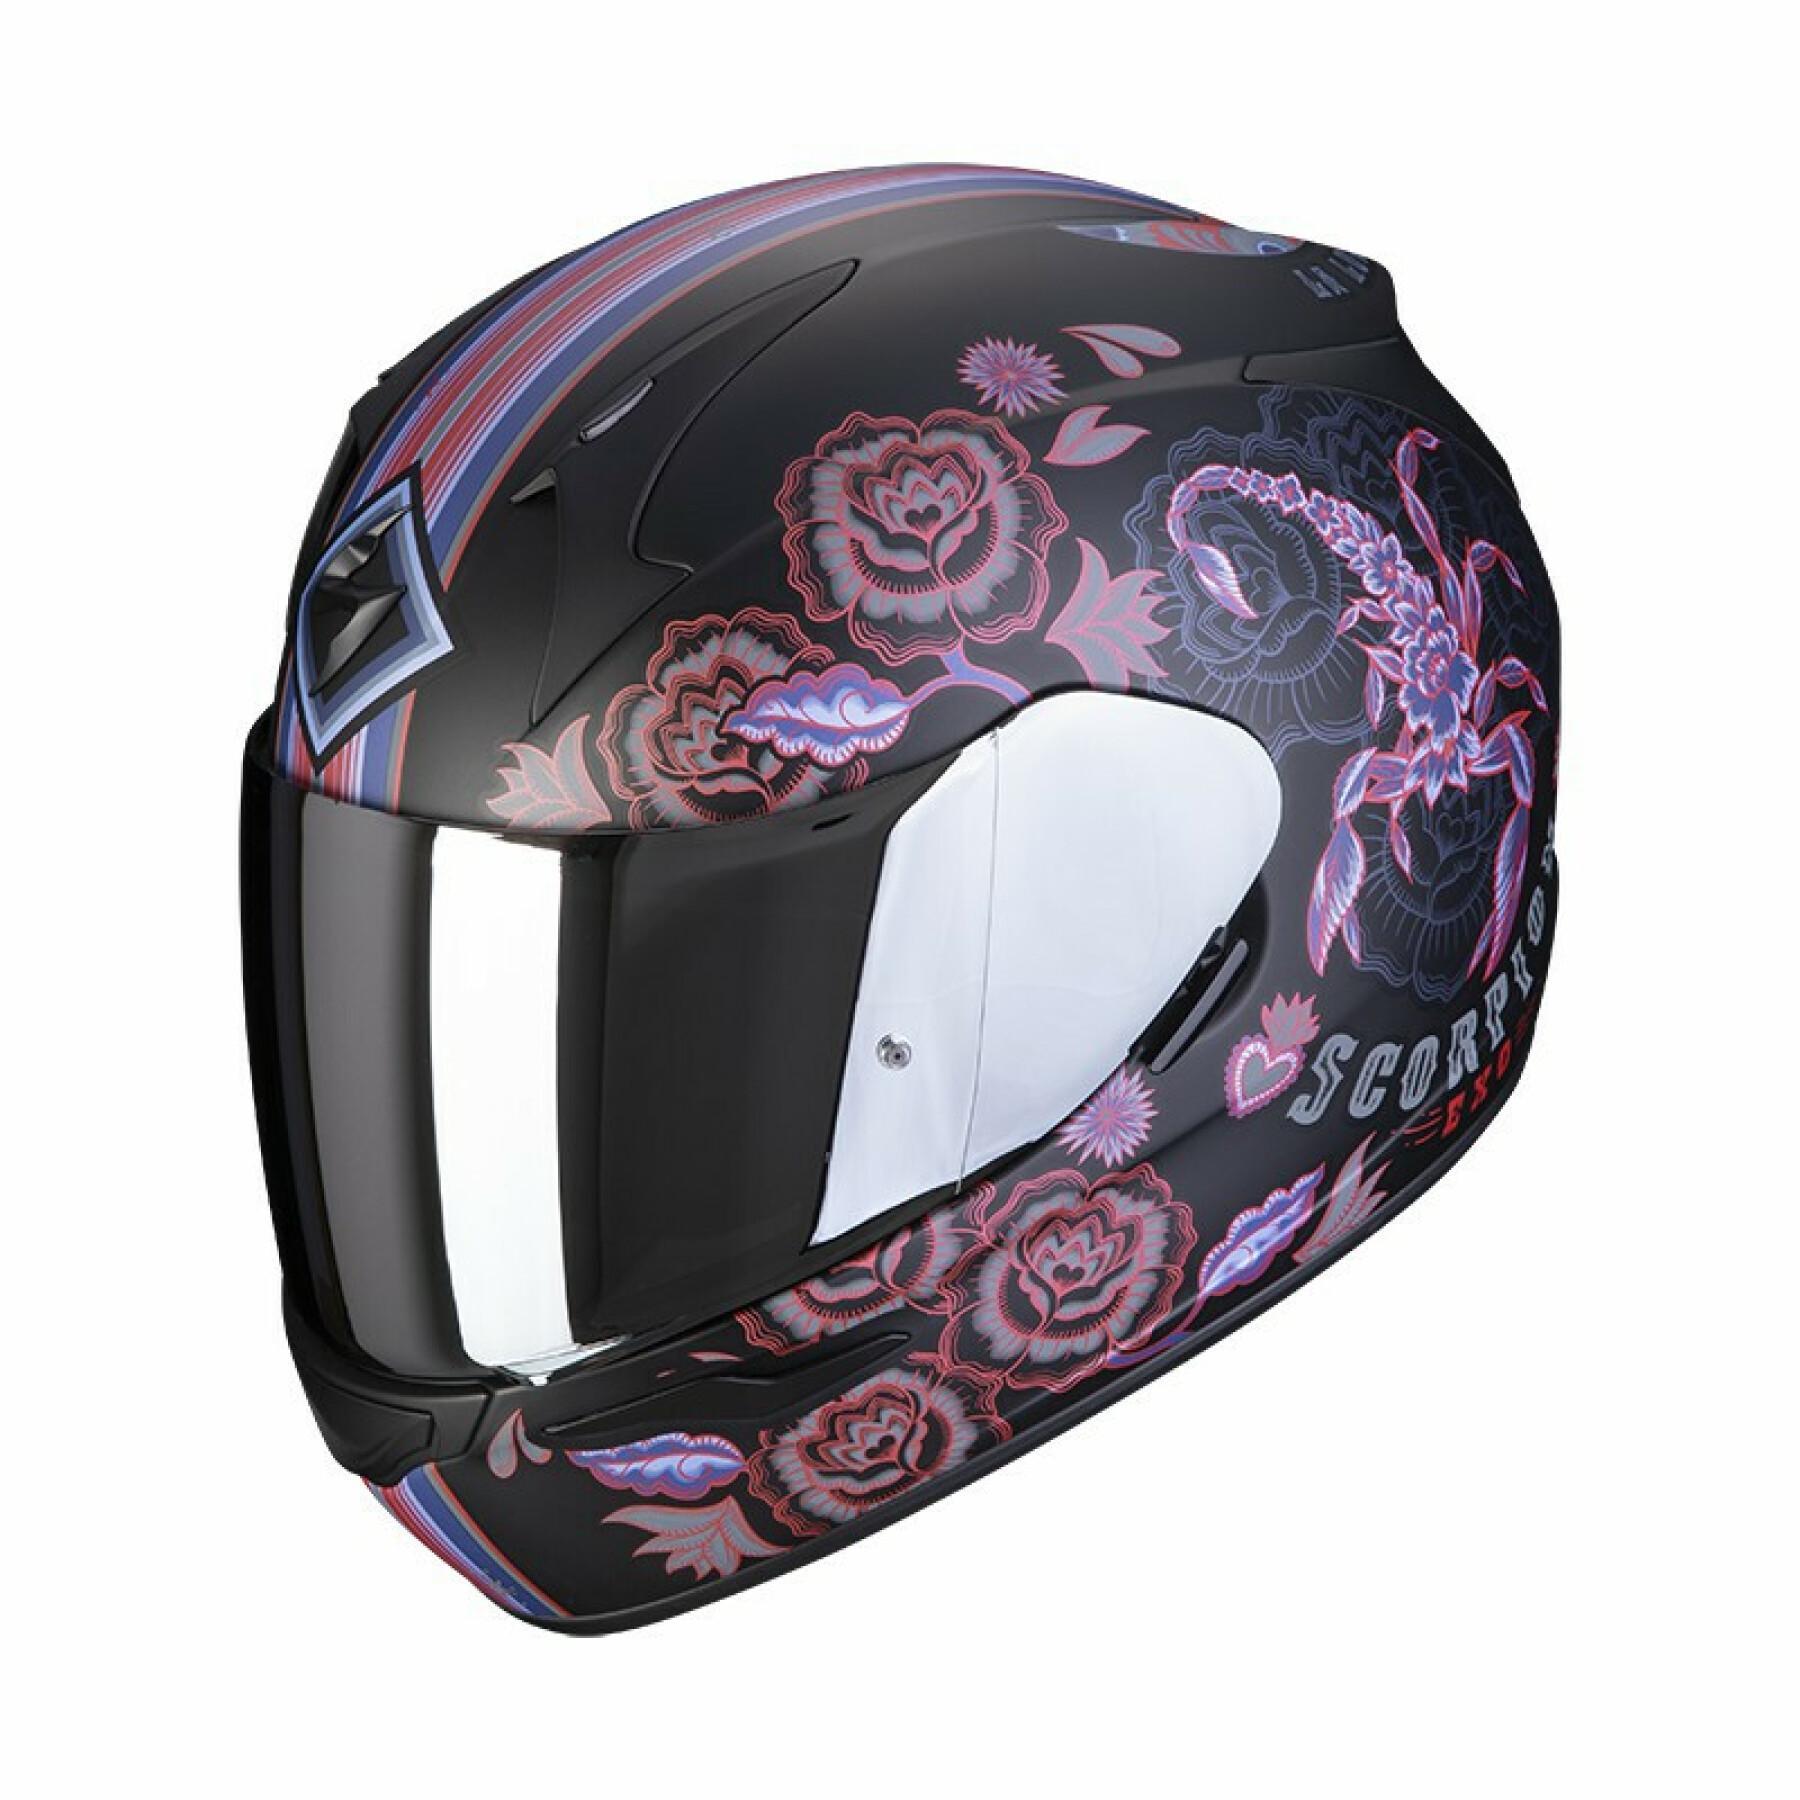 Full face helmet Scorpion Exo-390 CHICA II